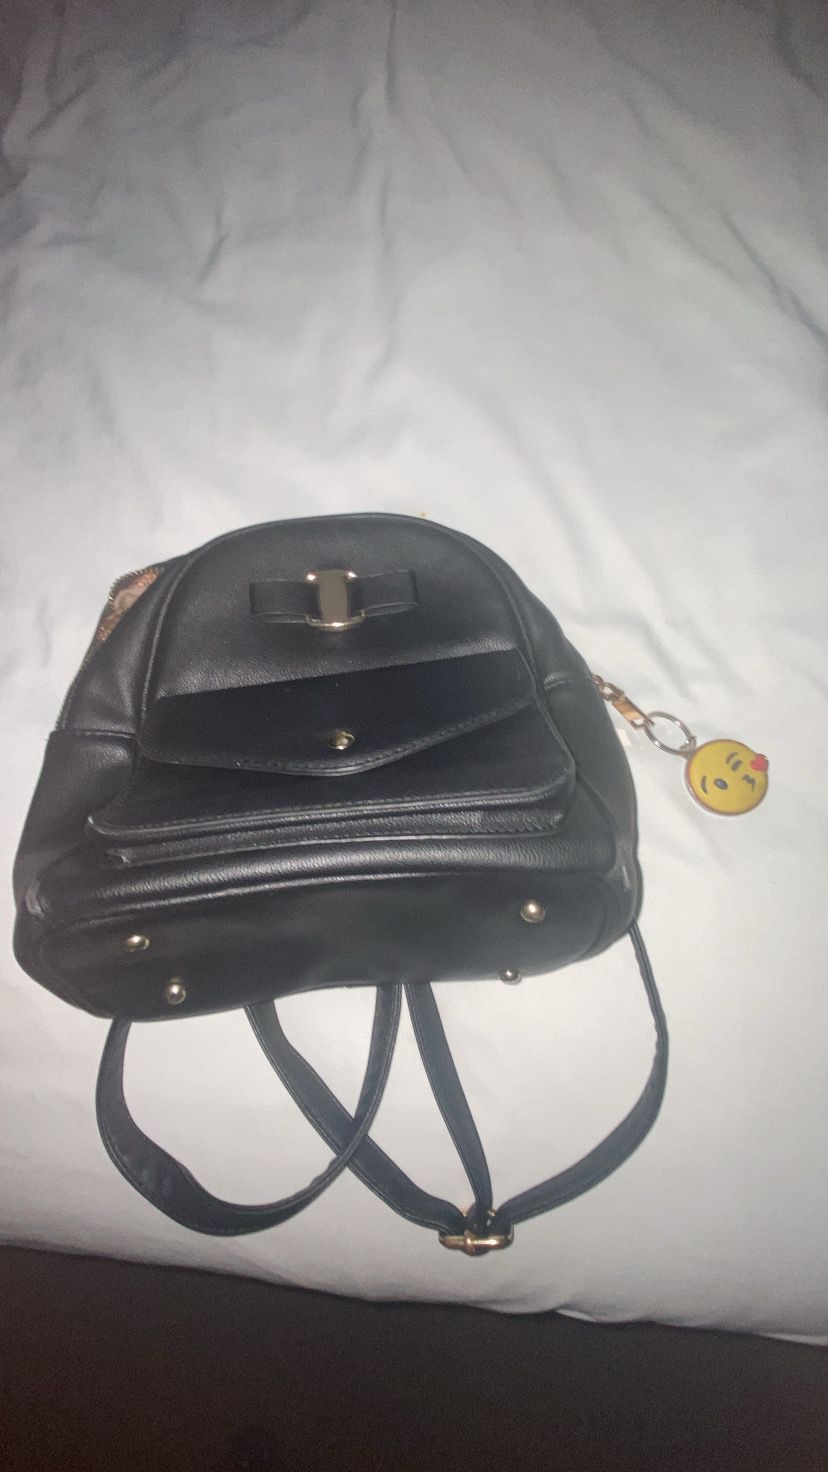 Mini backpack